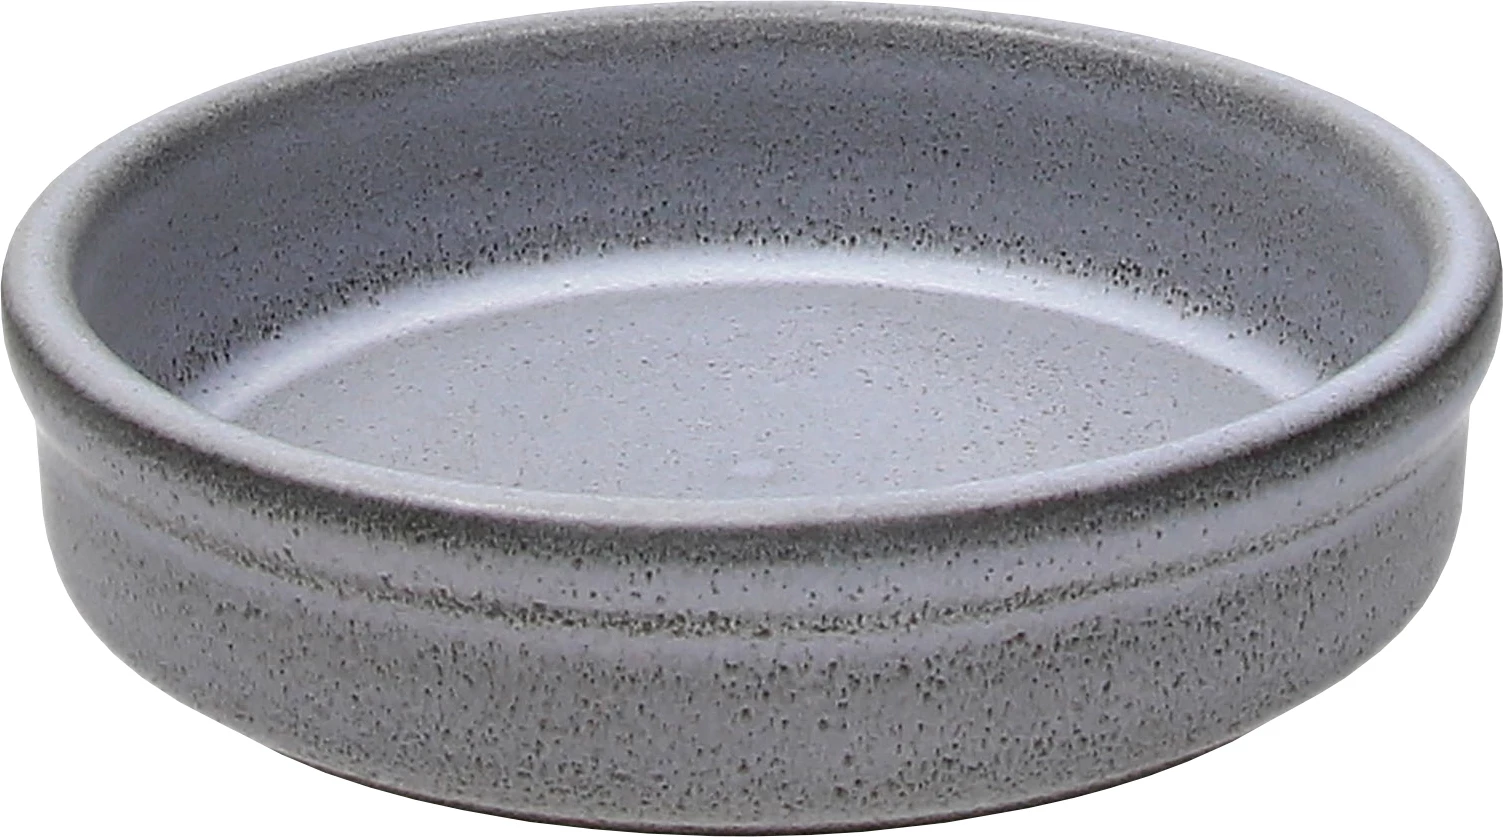 Tognana Terracotta skål, lav, grå, 32 cl, ø15 cm